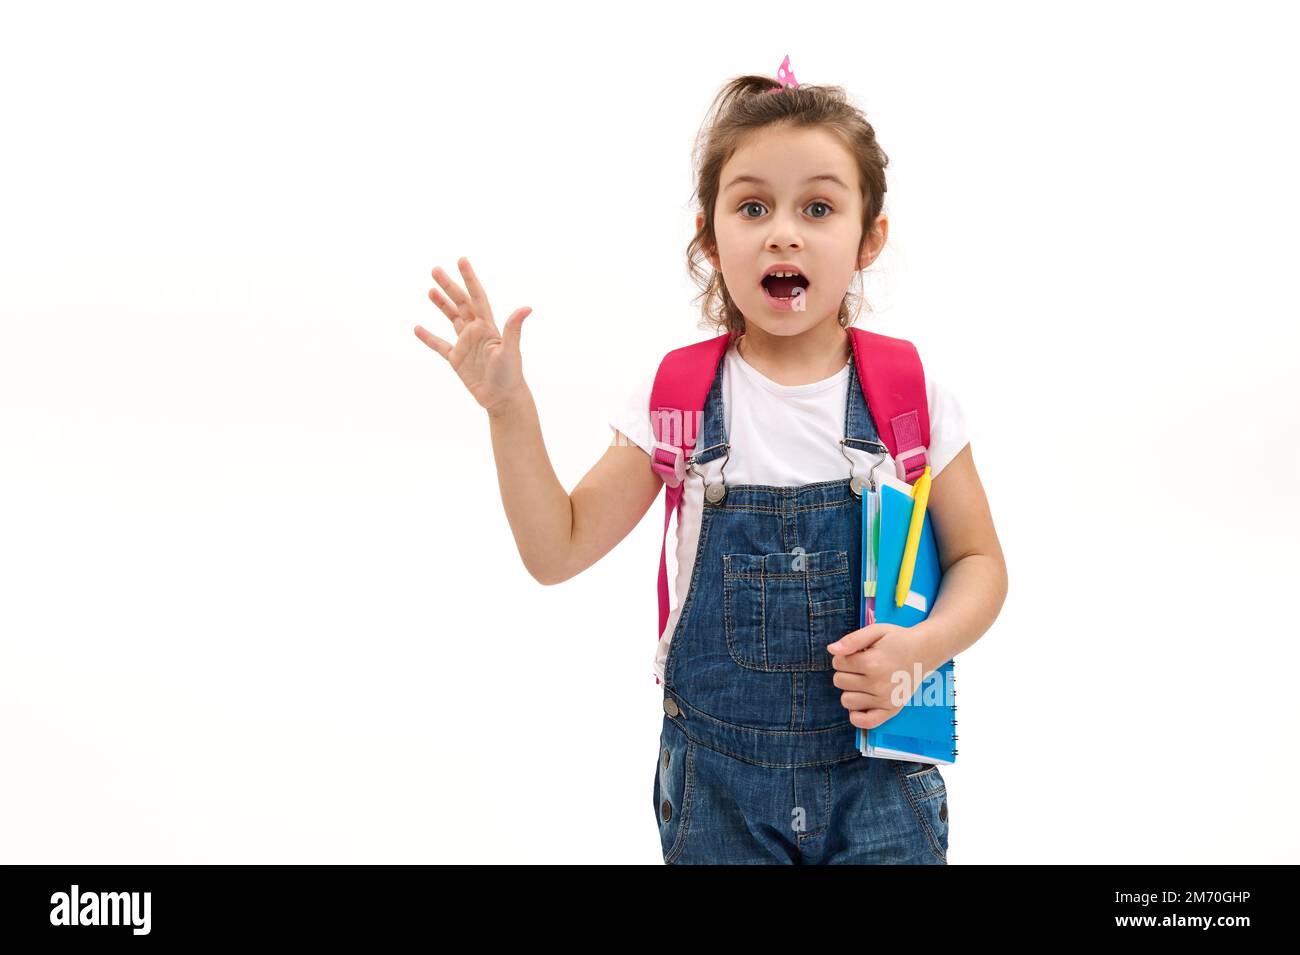 Ein überraschtes kleines Mädchen, eine Grundschülerin, die Überraschung ausdrückt, mit Schulutensilien vor weißem Hintergrund posiert Stockfoto